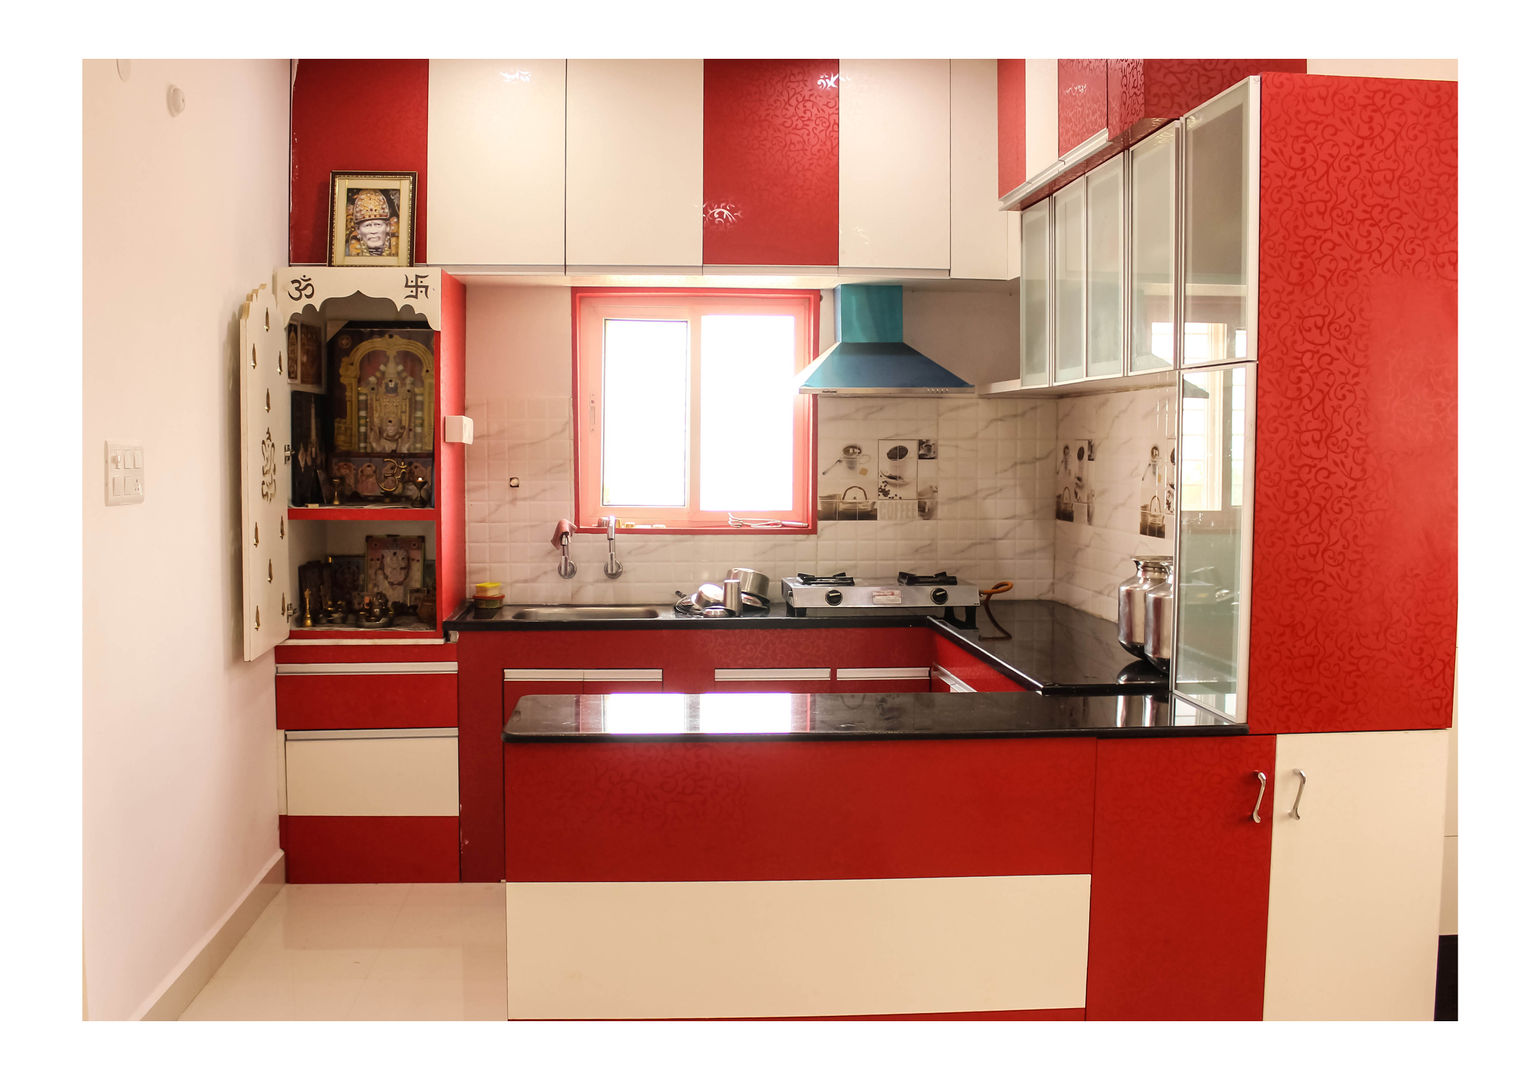 2 Bedroom Flat at Manikonda, Happy Homes Designers Happy Homes Designers Cocinas modernas: Ideas, imágenes y decoración Estanterías y despensas